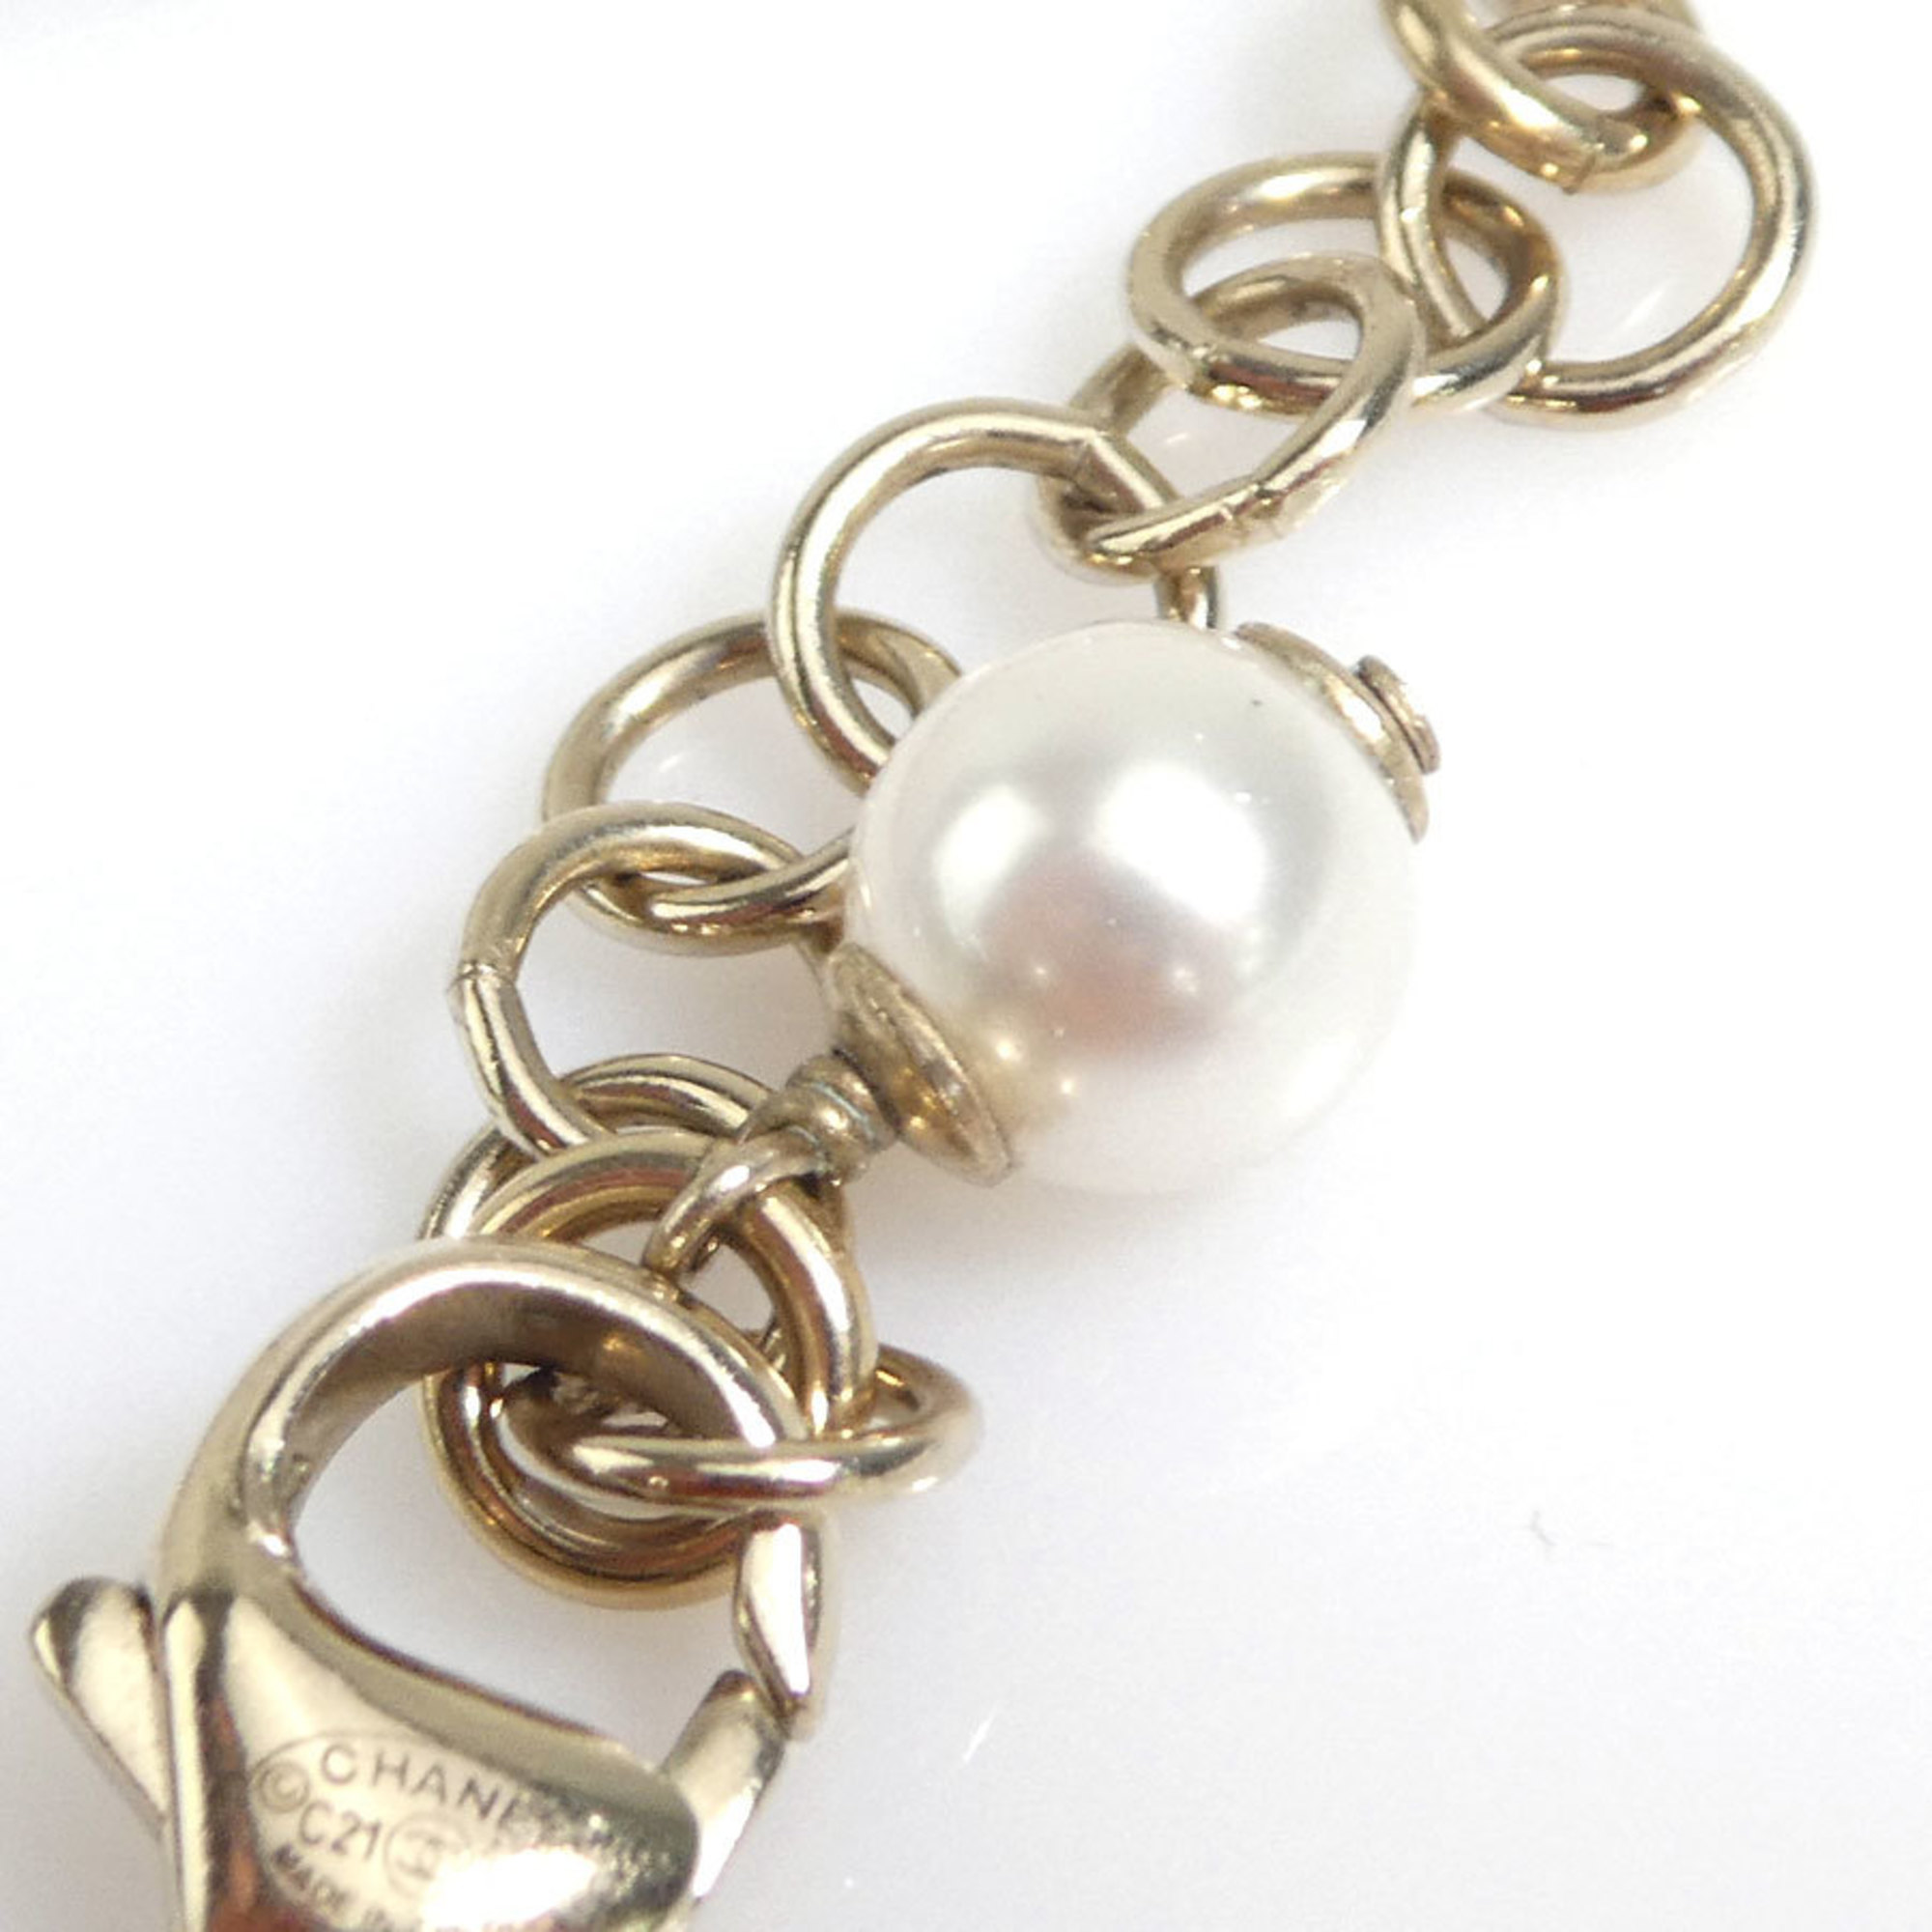 CHANEL Bracelet Metal/Faux Pearl/Rhinestone Gold Women's r9986f